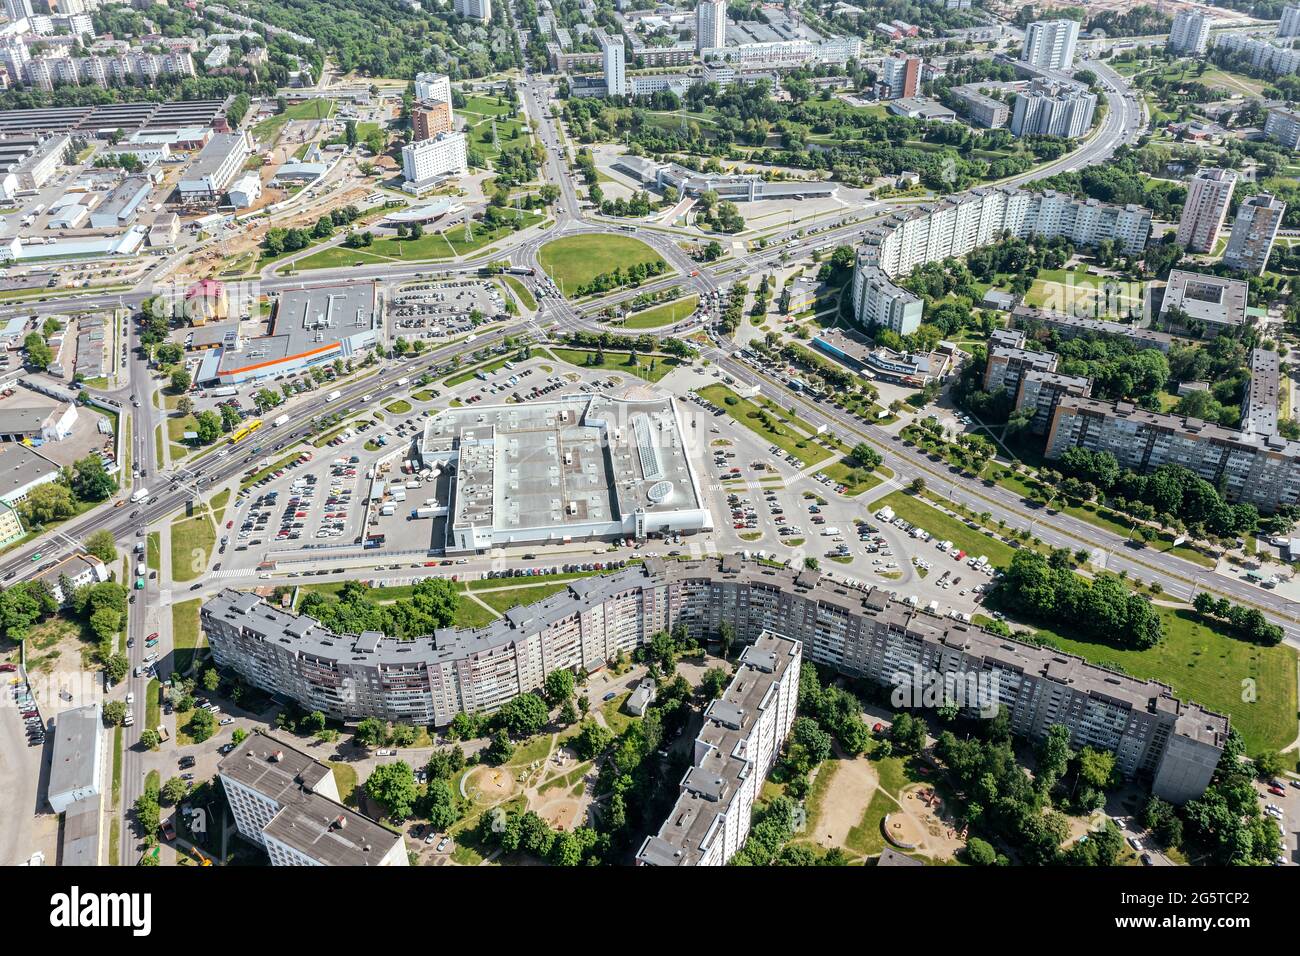 Vista aerea panoramica del moderno quartiere residenziale, incrocio stradale, centri commerciali e parcheggi nella città di Minsk, Bielorussia Foto Stock